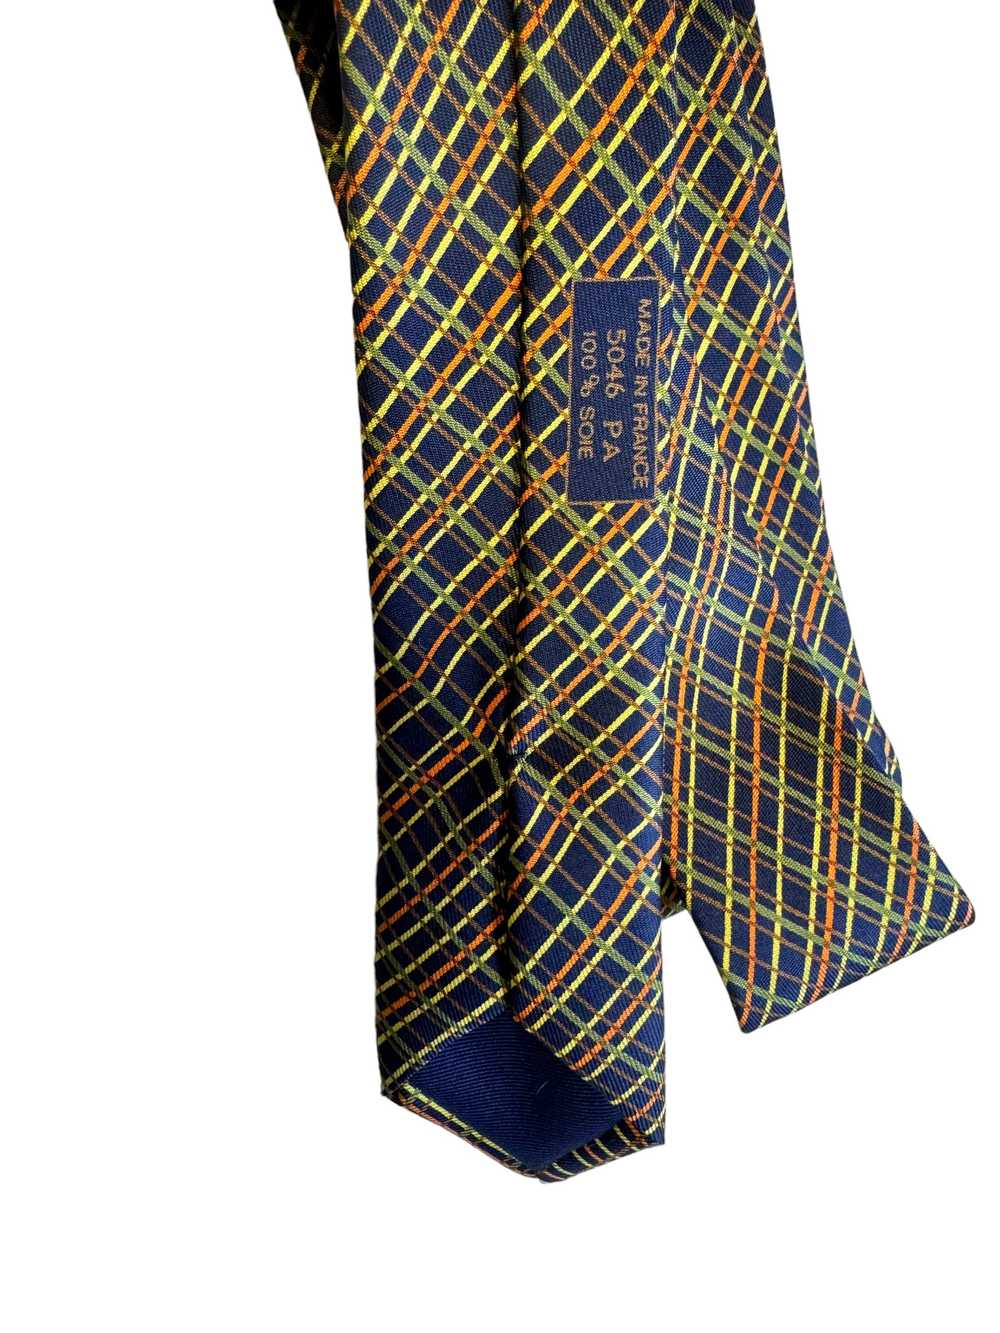 Vintage Hermes 100% Silk Graphic Tie - image 7